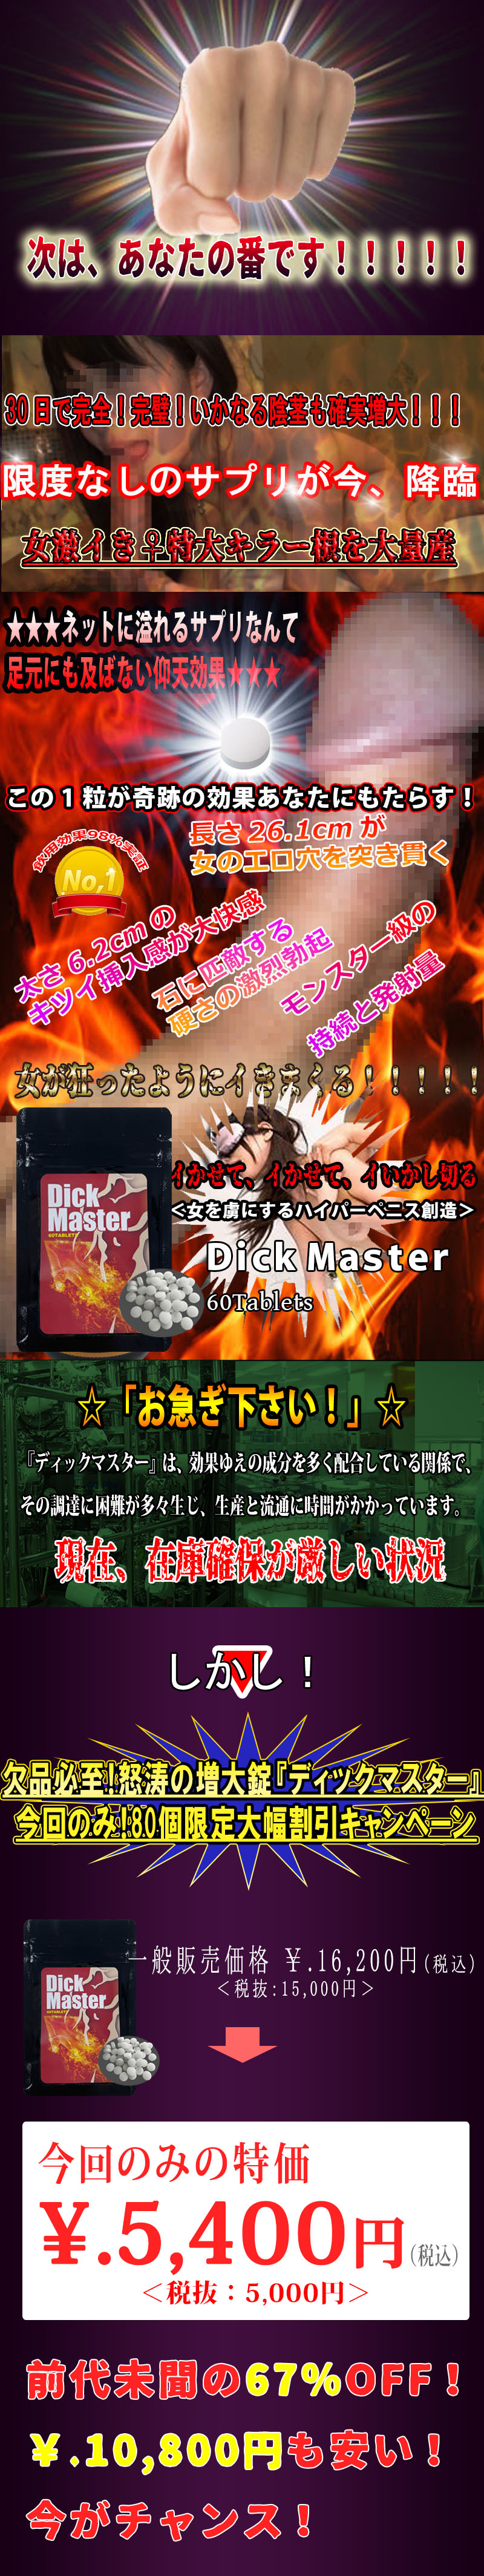 DickMaster(ディックマスター)